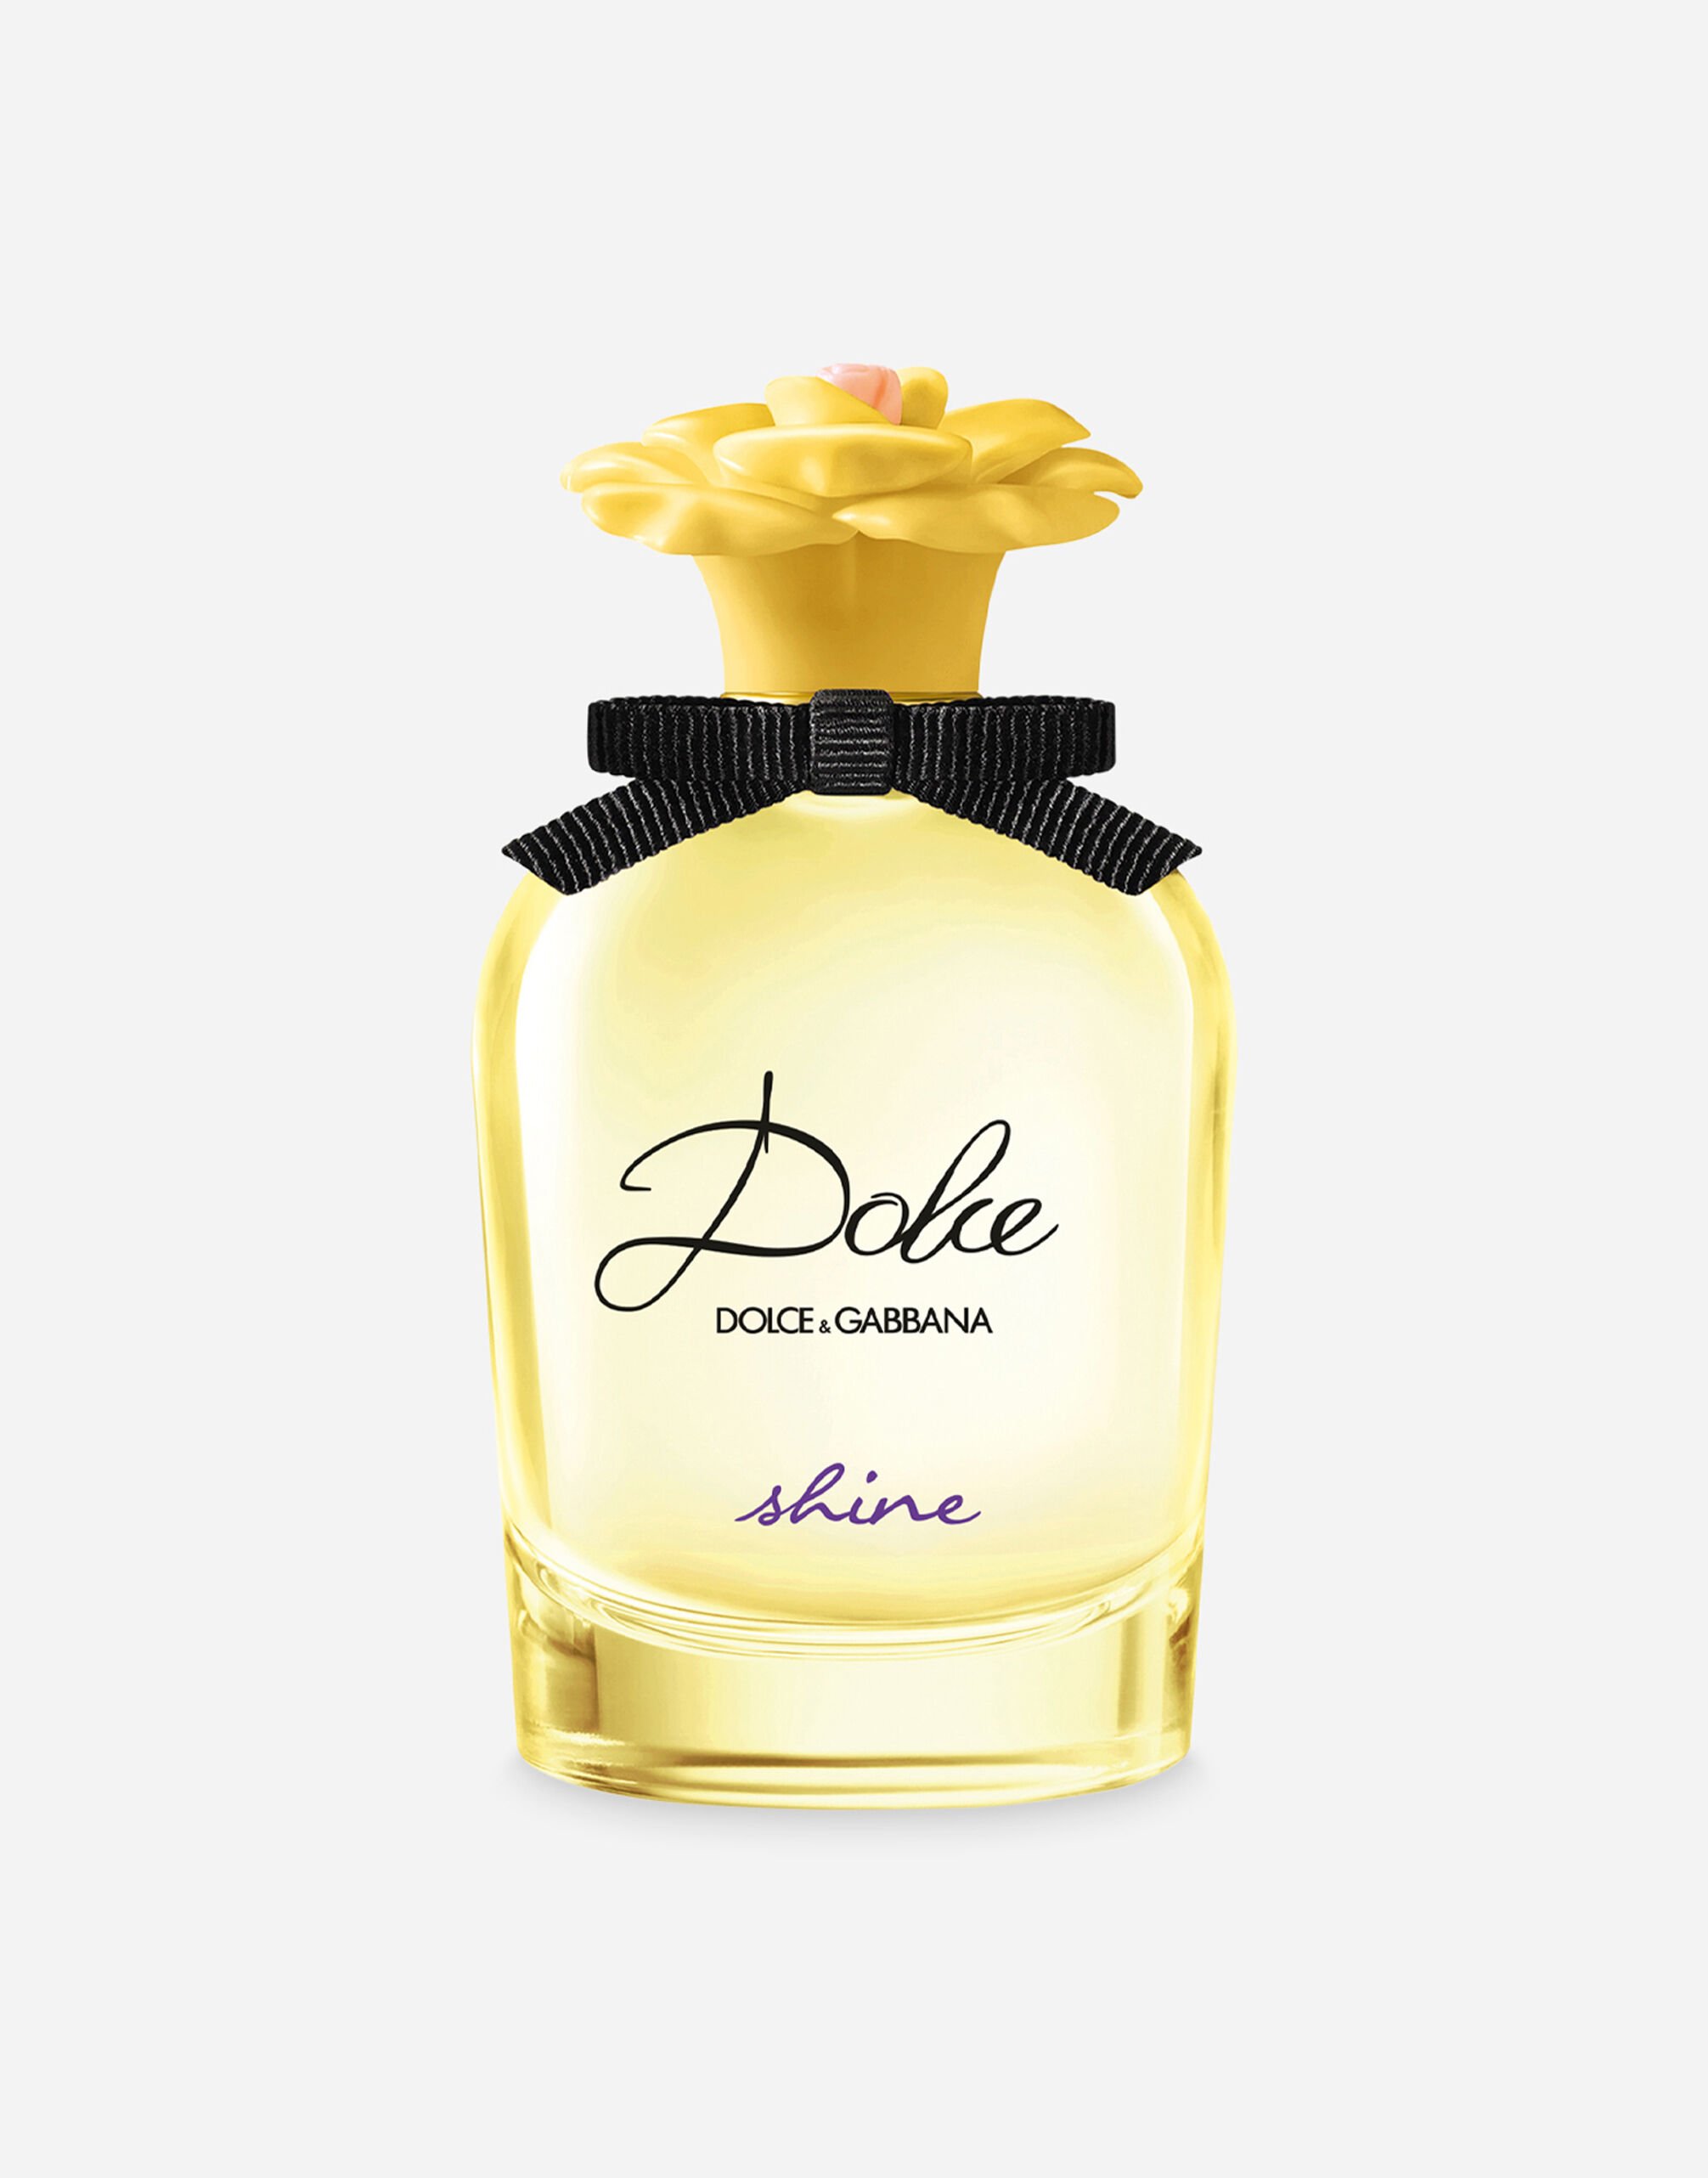 Dolce & Gabbana Dolce Shine Eau de Parfum - VP001RVP000